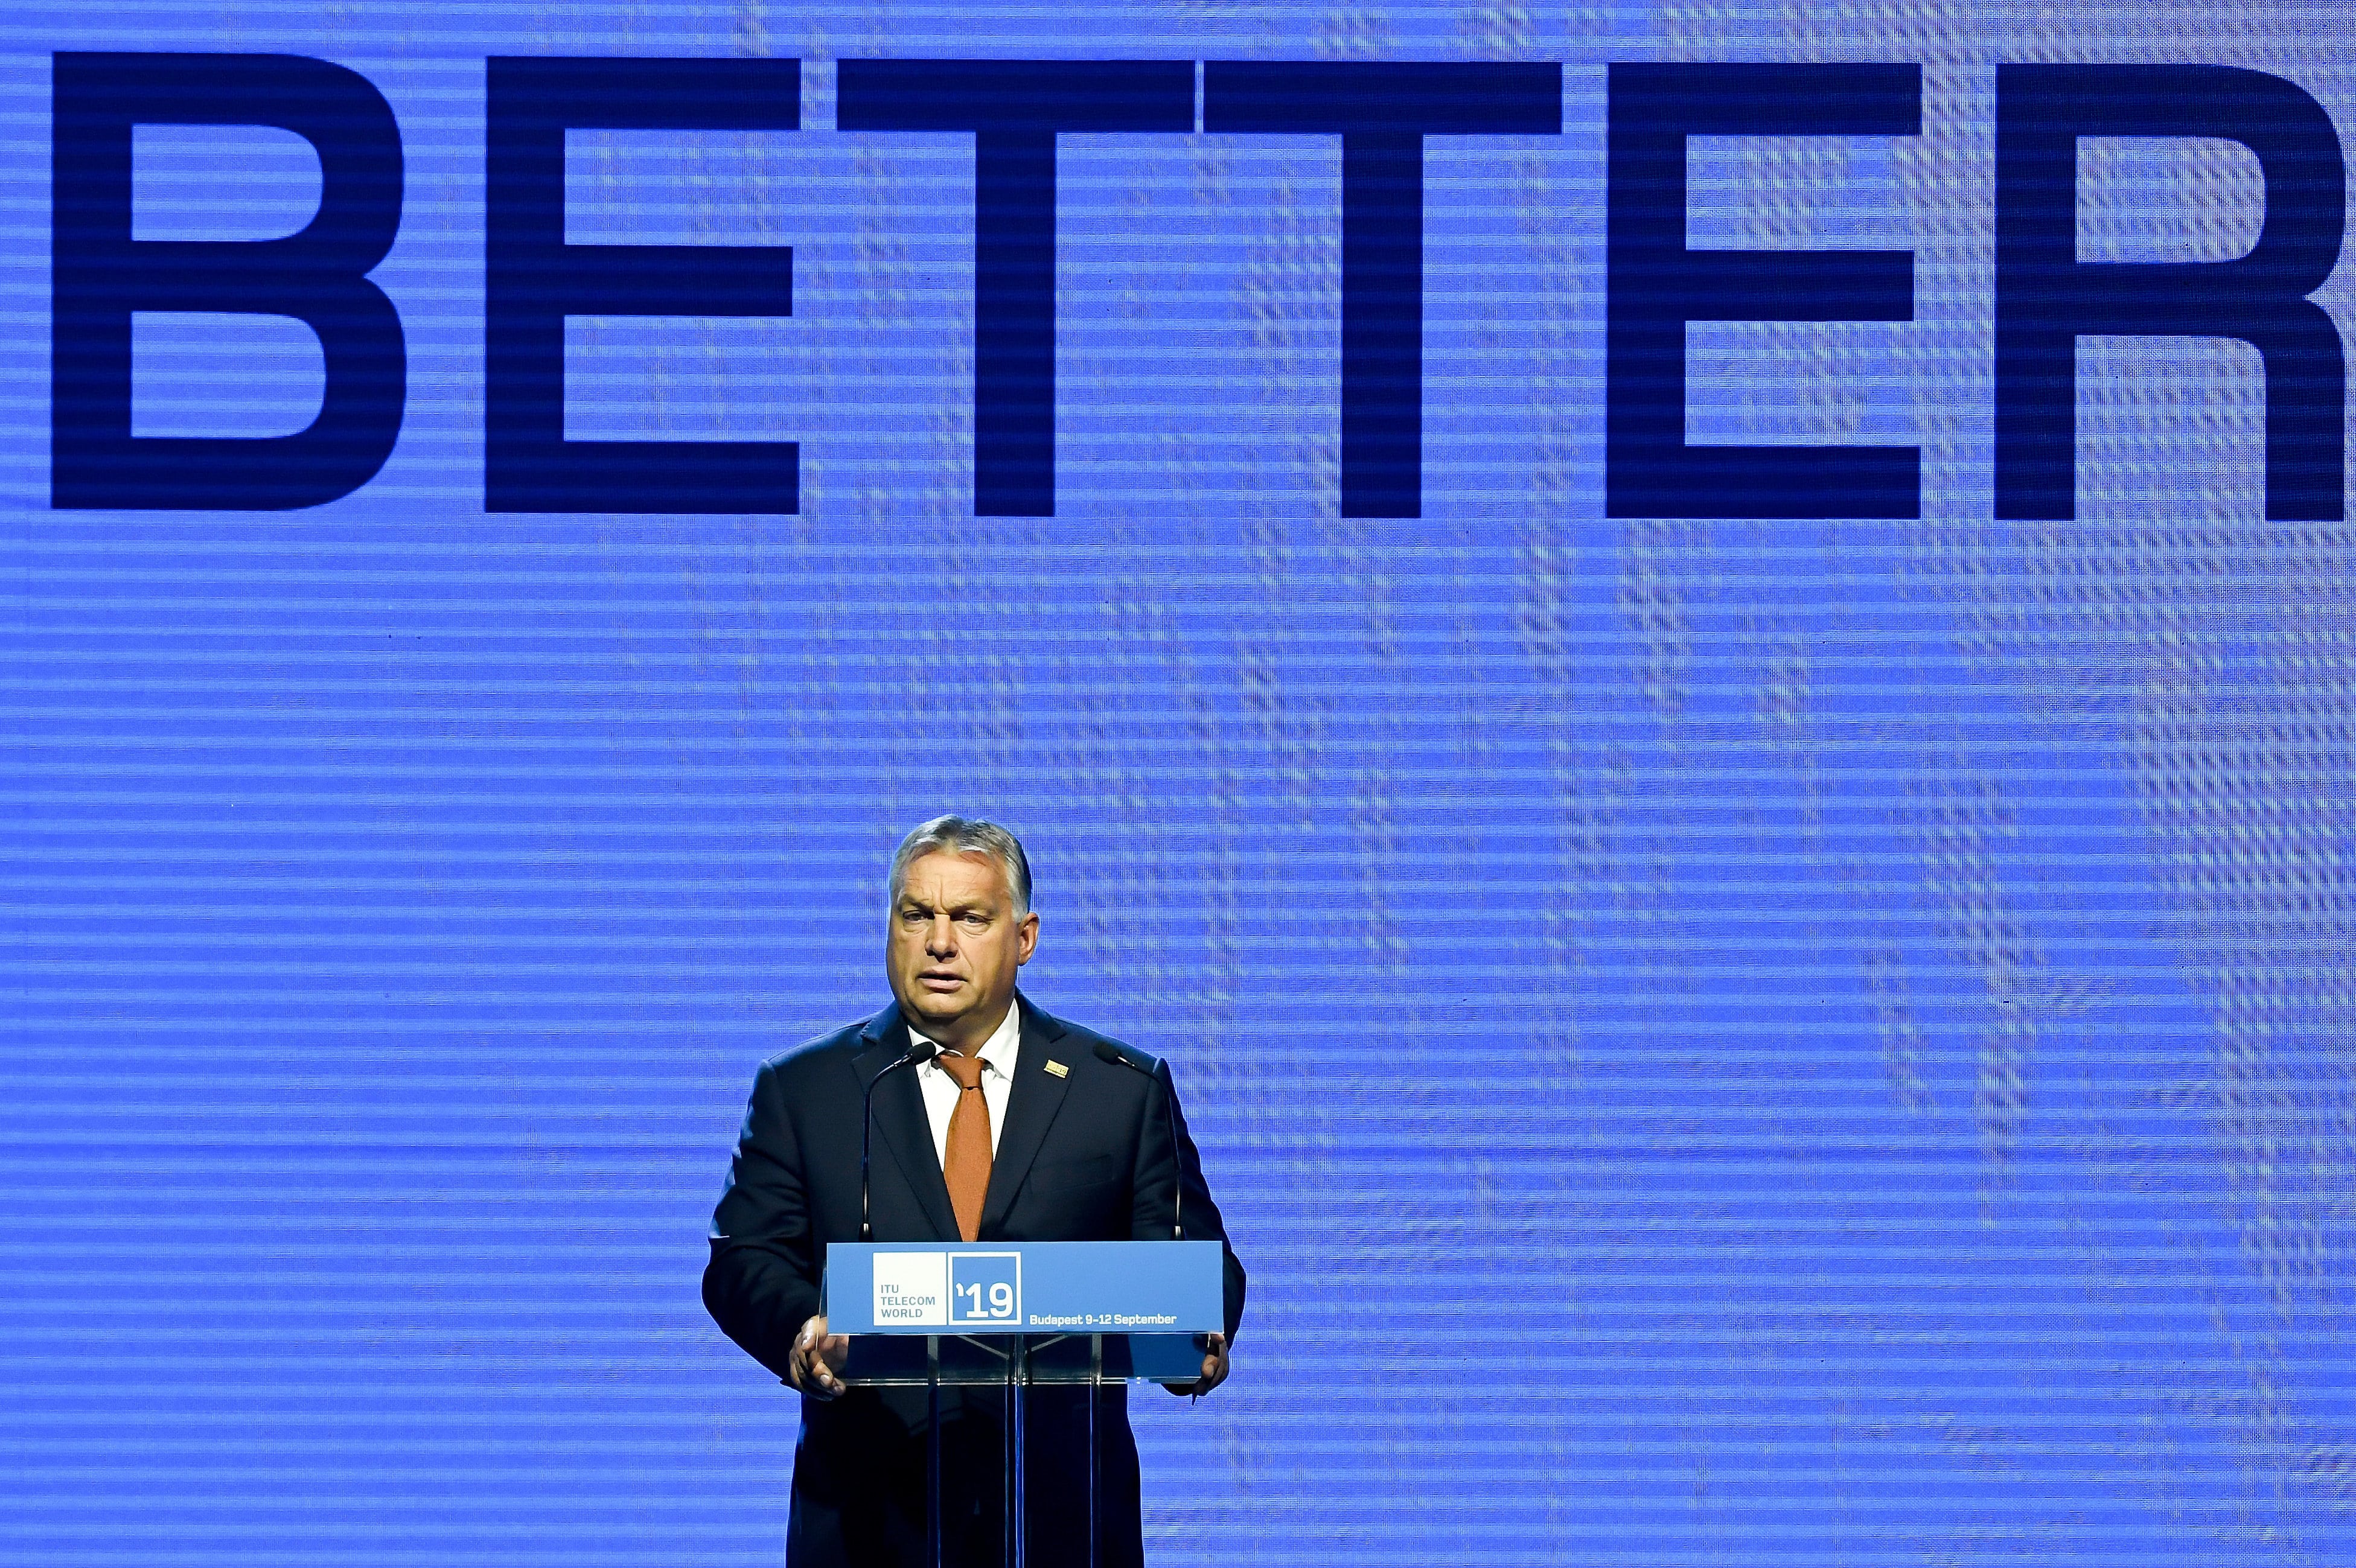 歐爾班總理在布達佩斯開幕國際電聯世界電信大會